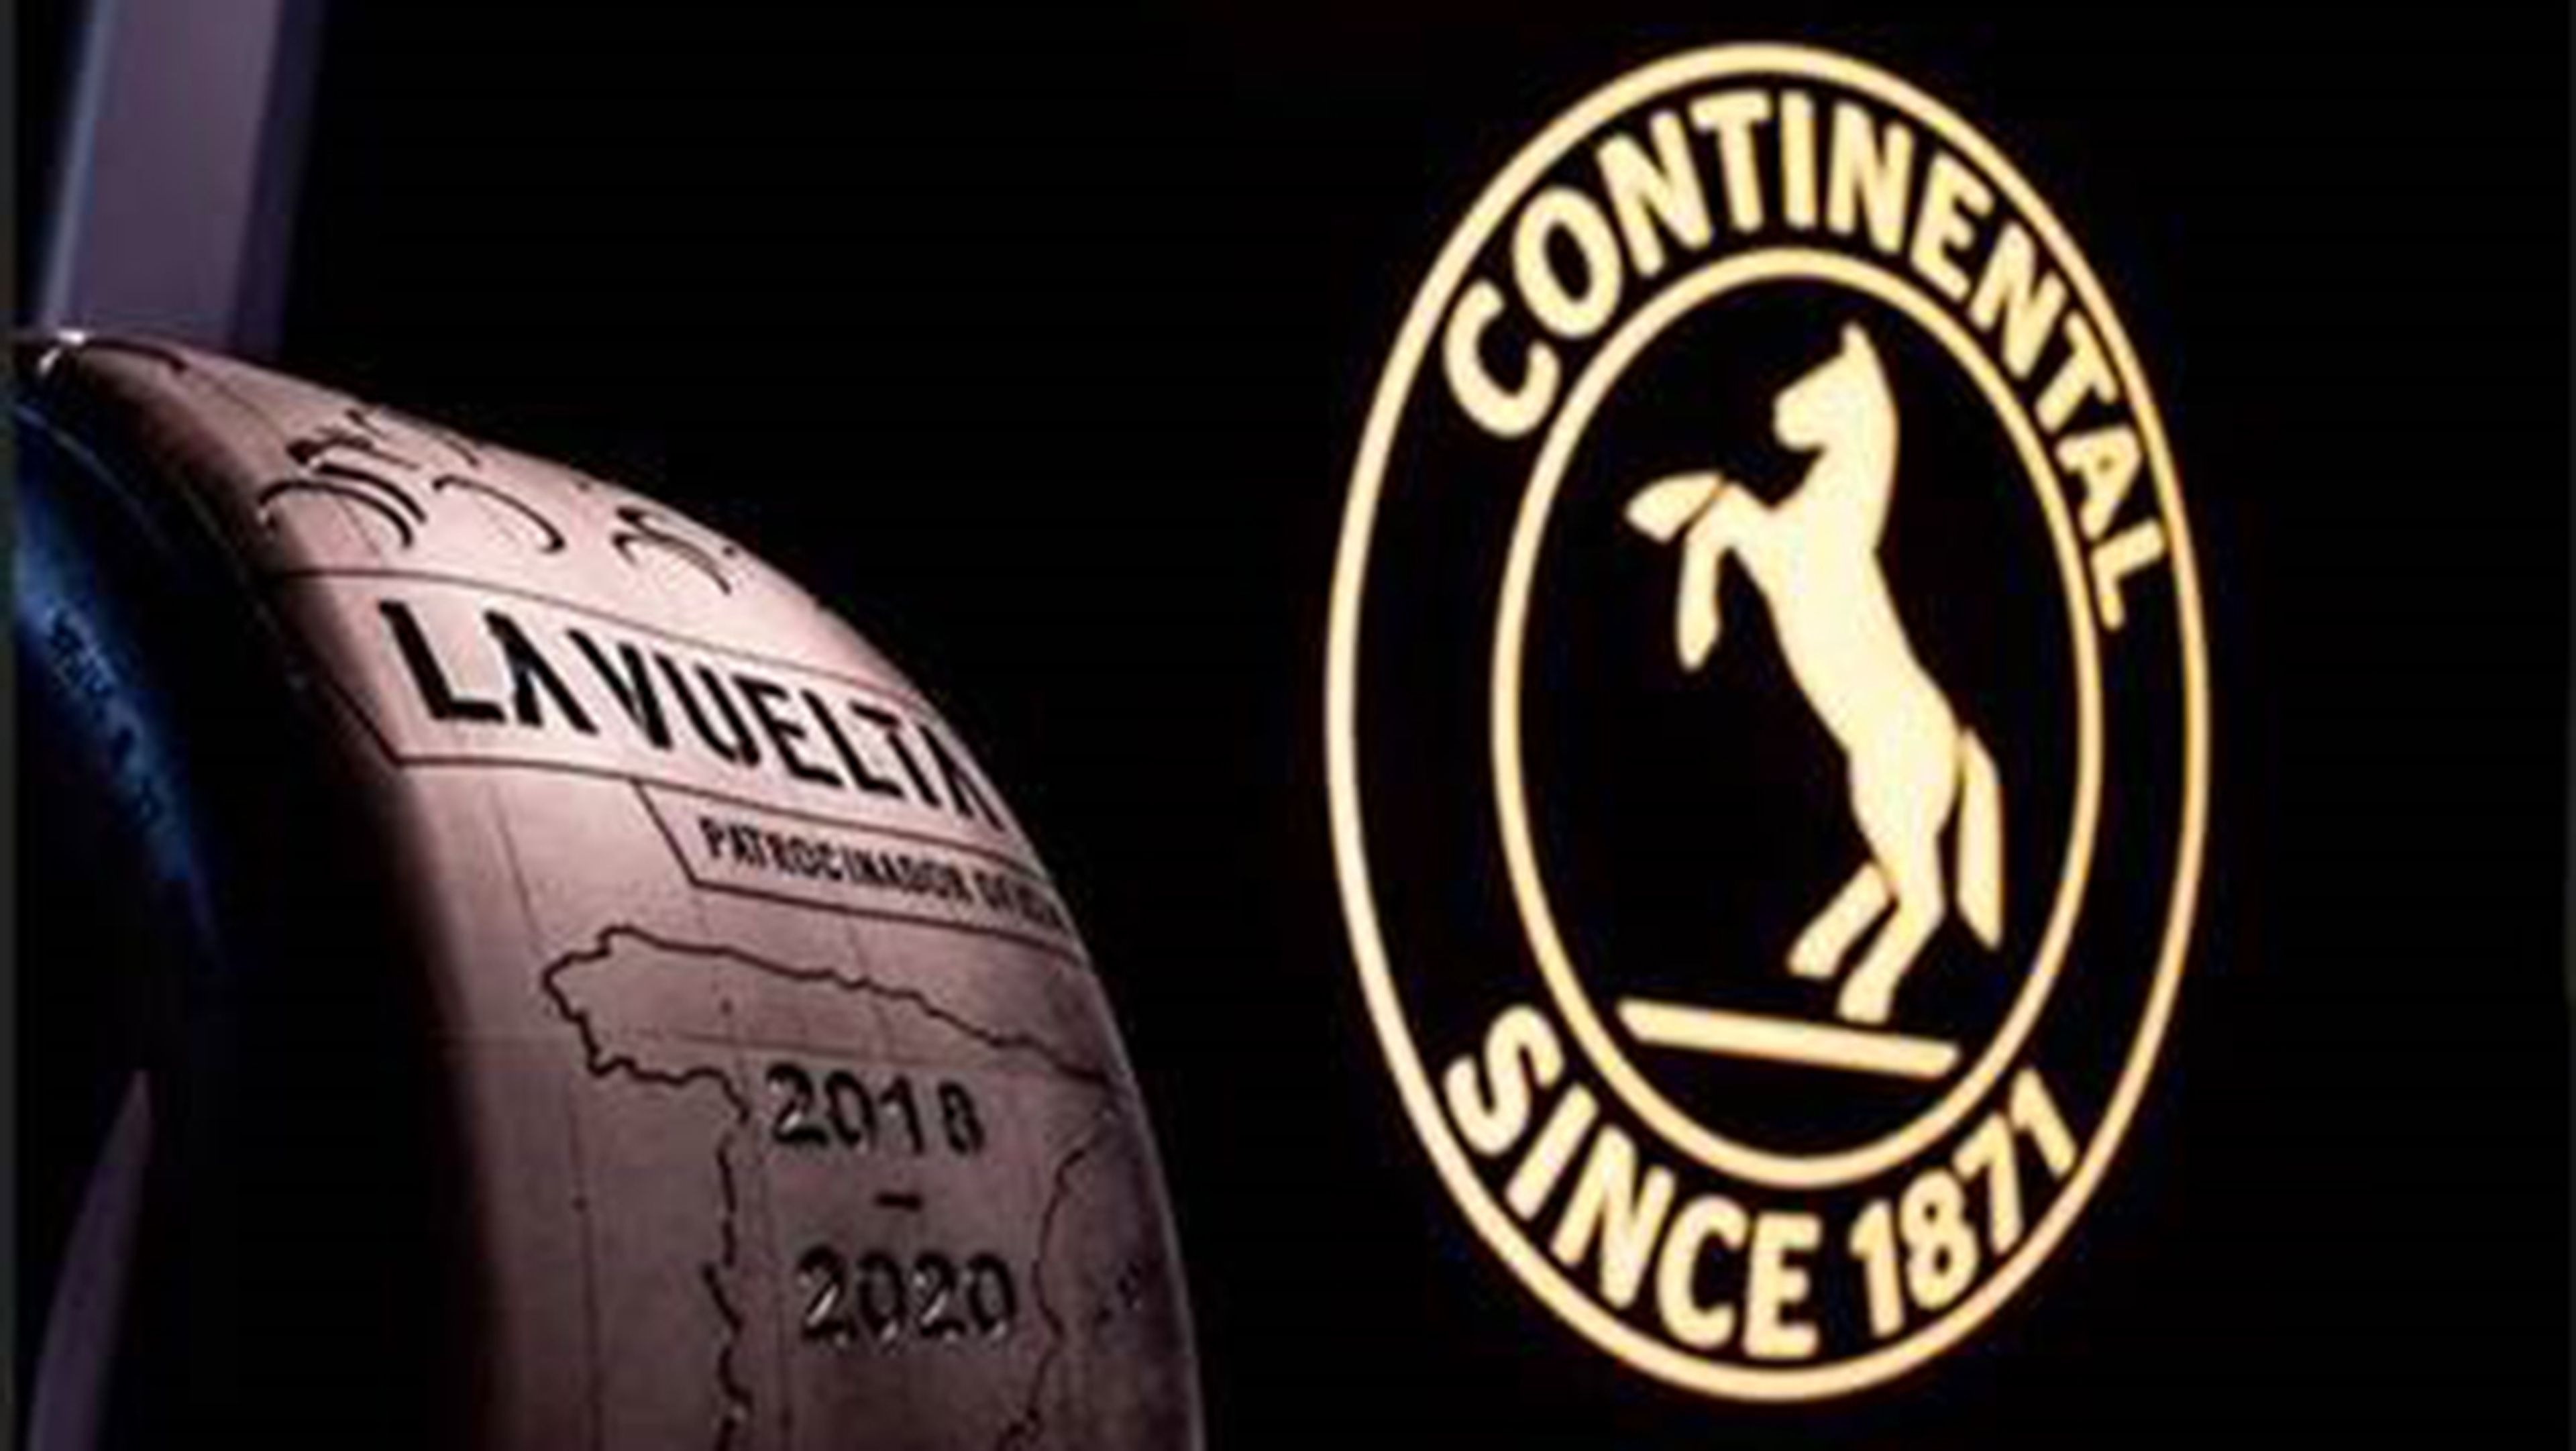 Continental, patrocinador de La Vuelta entre 2018 y 2020